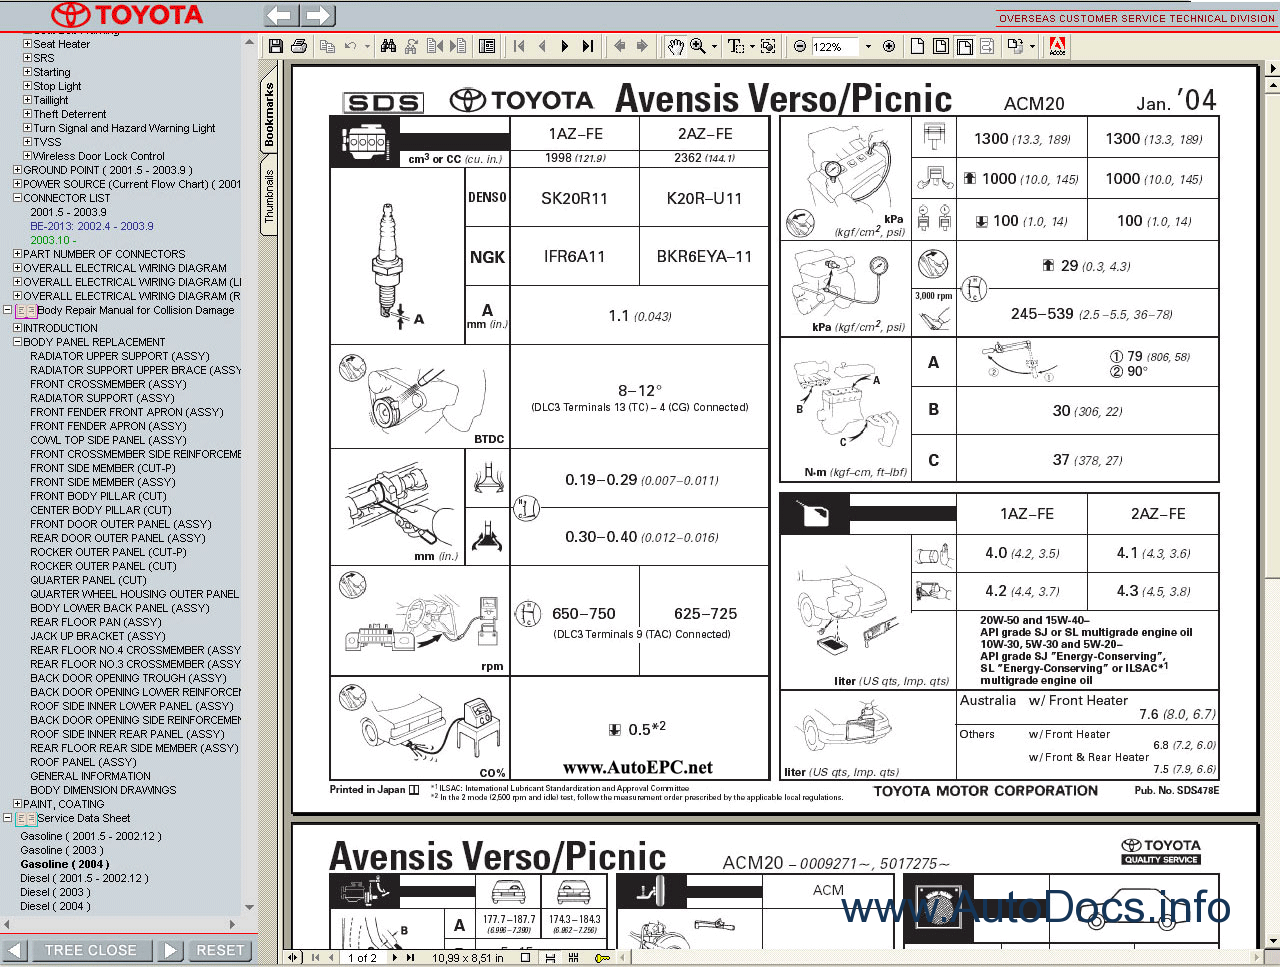 Toyota Avensis Verso    Picnic Service Manual Repair Manual